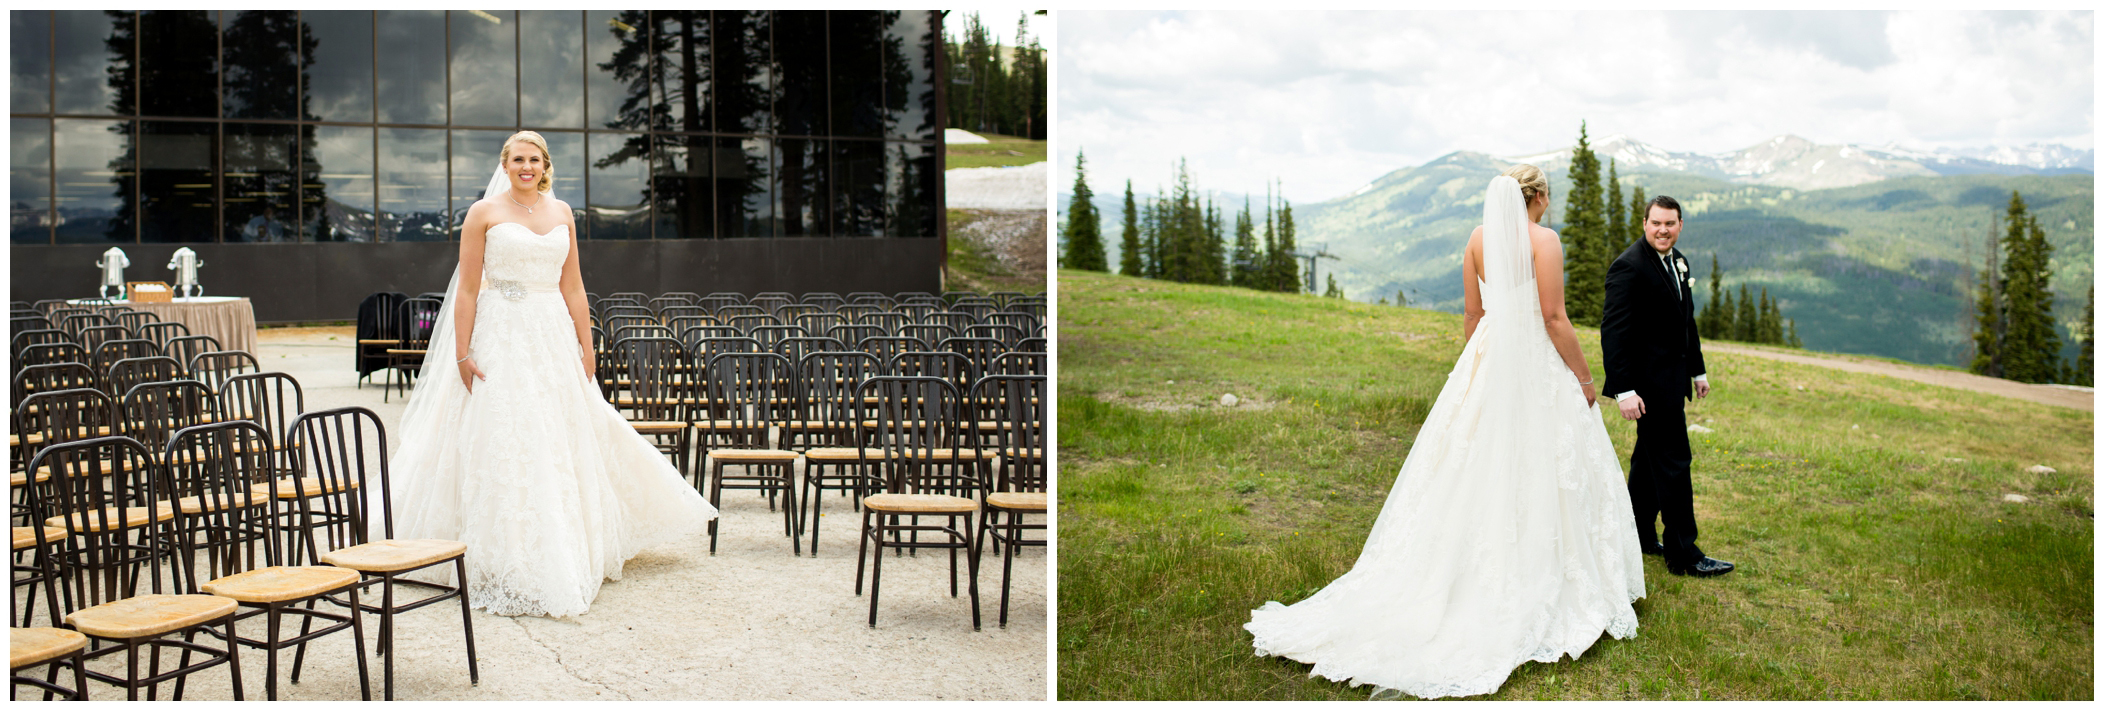 Colorado mountain wedding first look